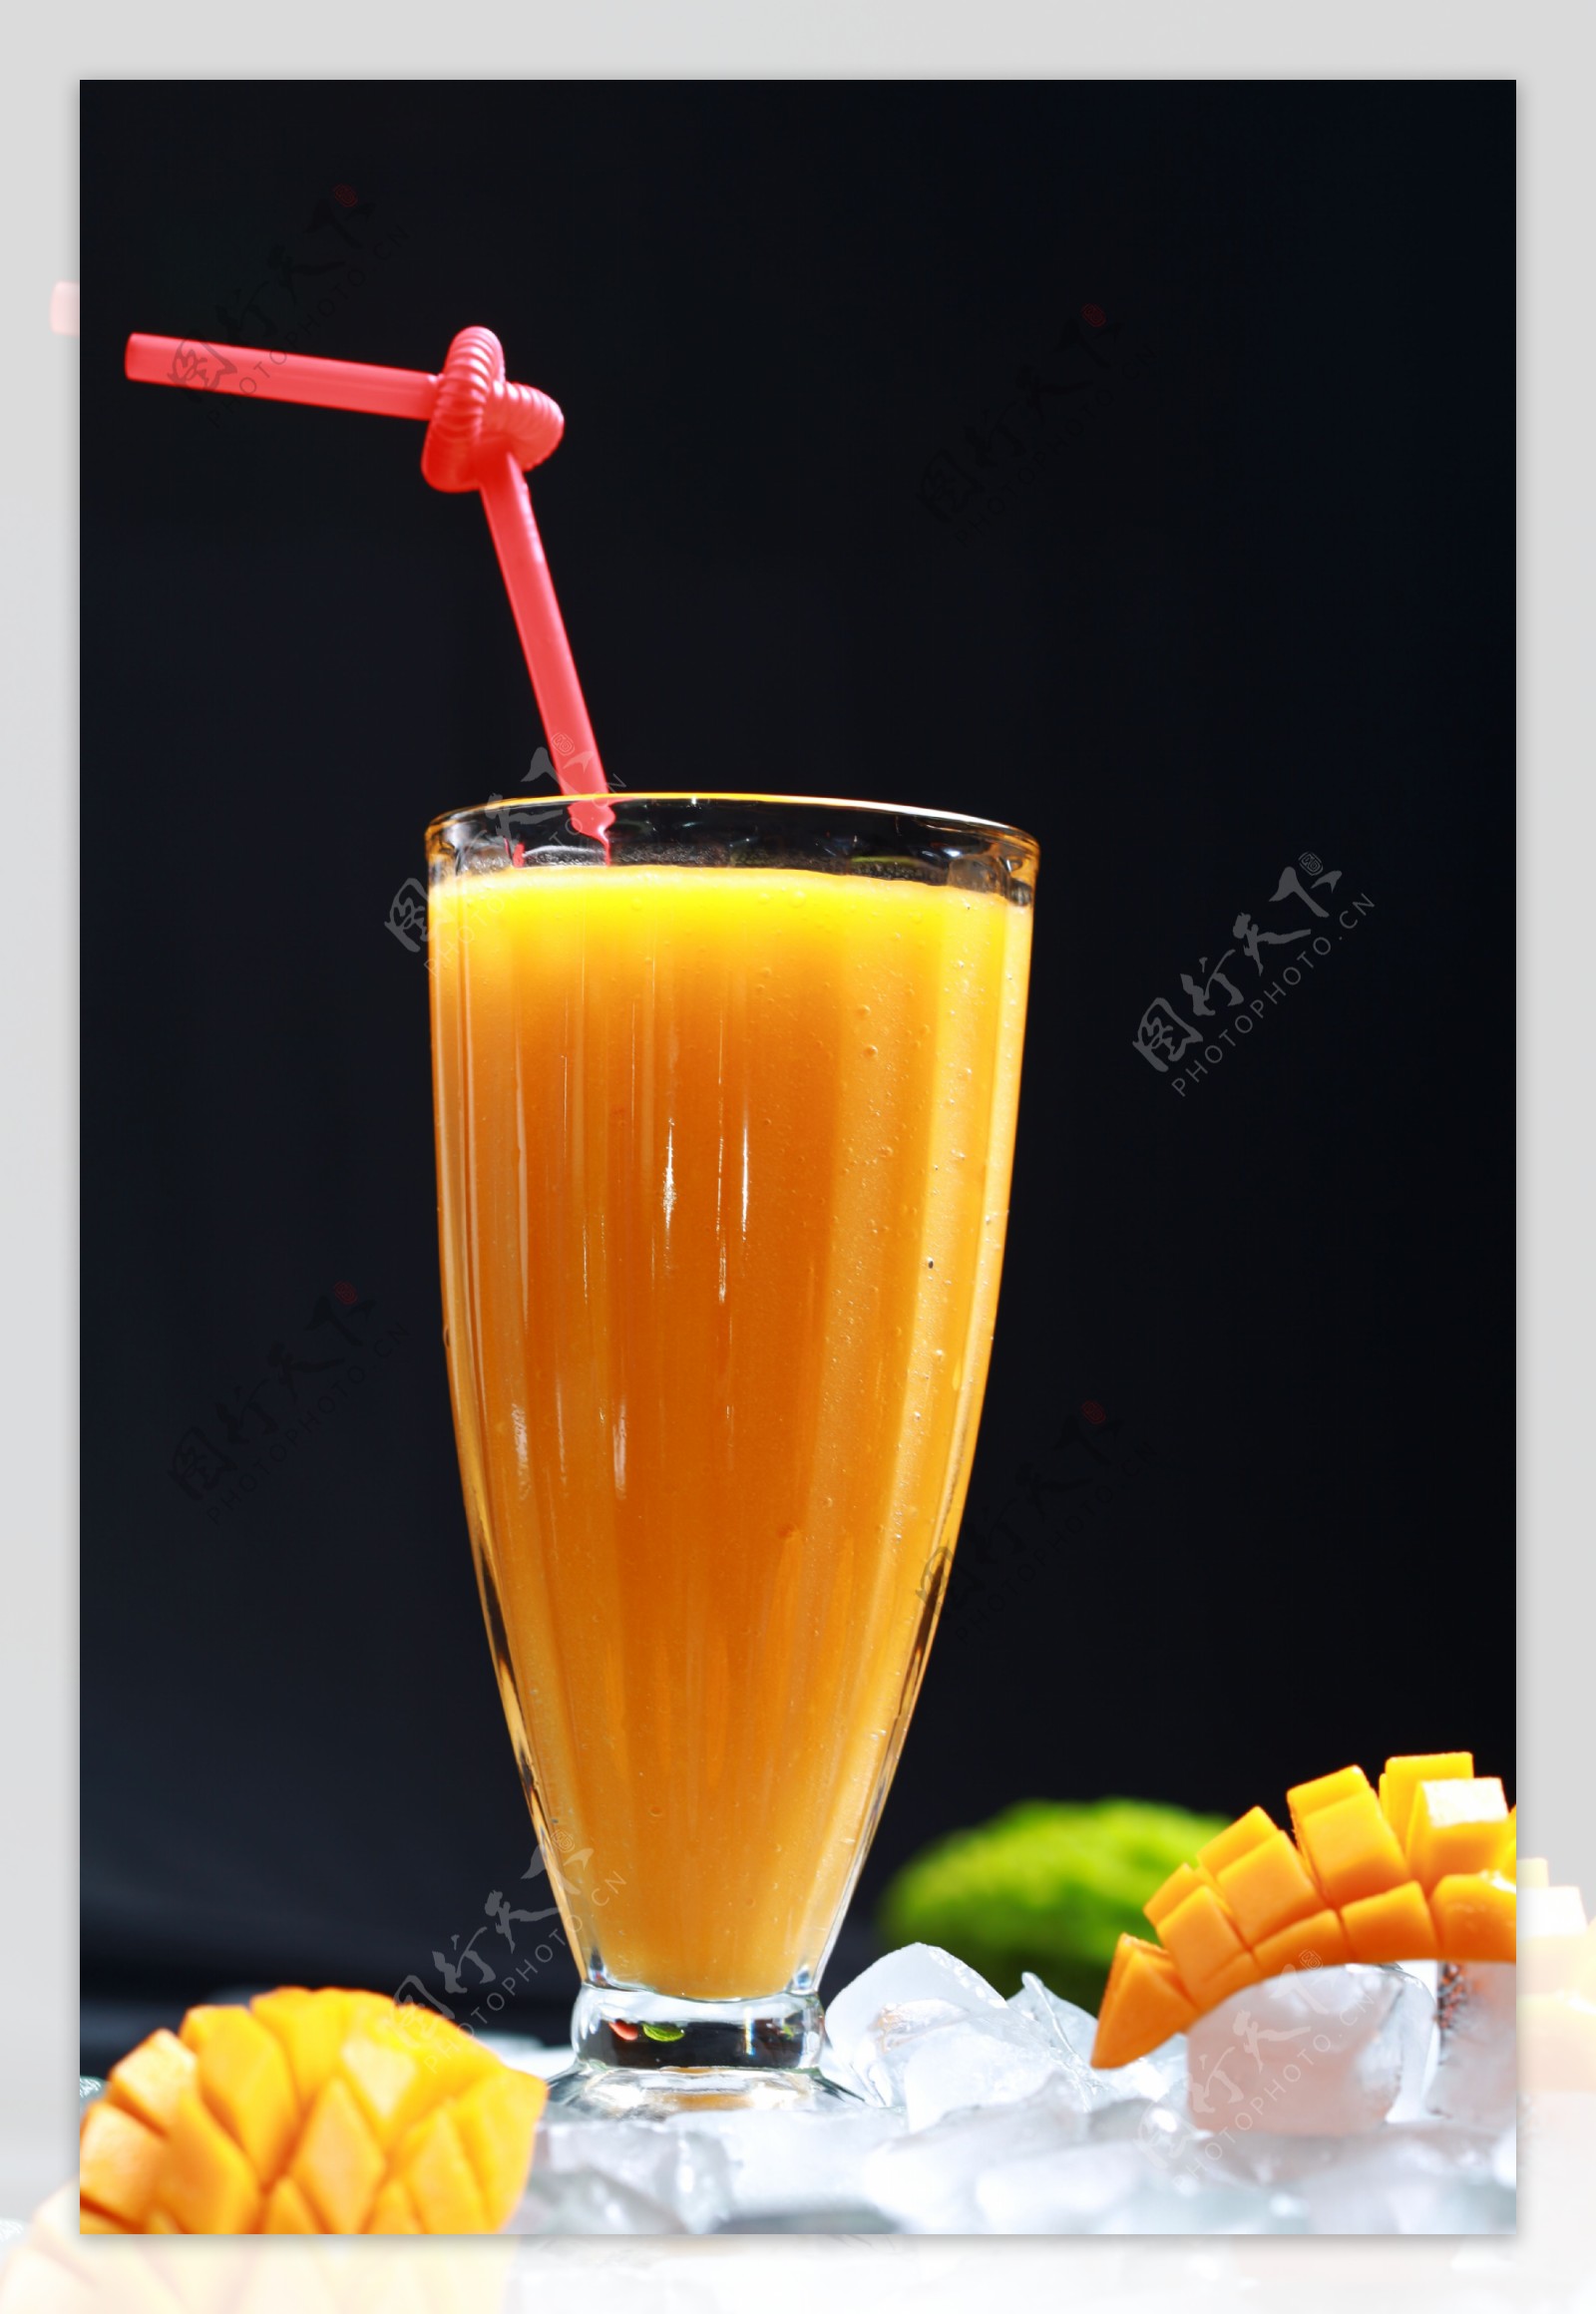 鲜榨芒果汁图片